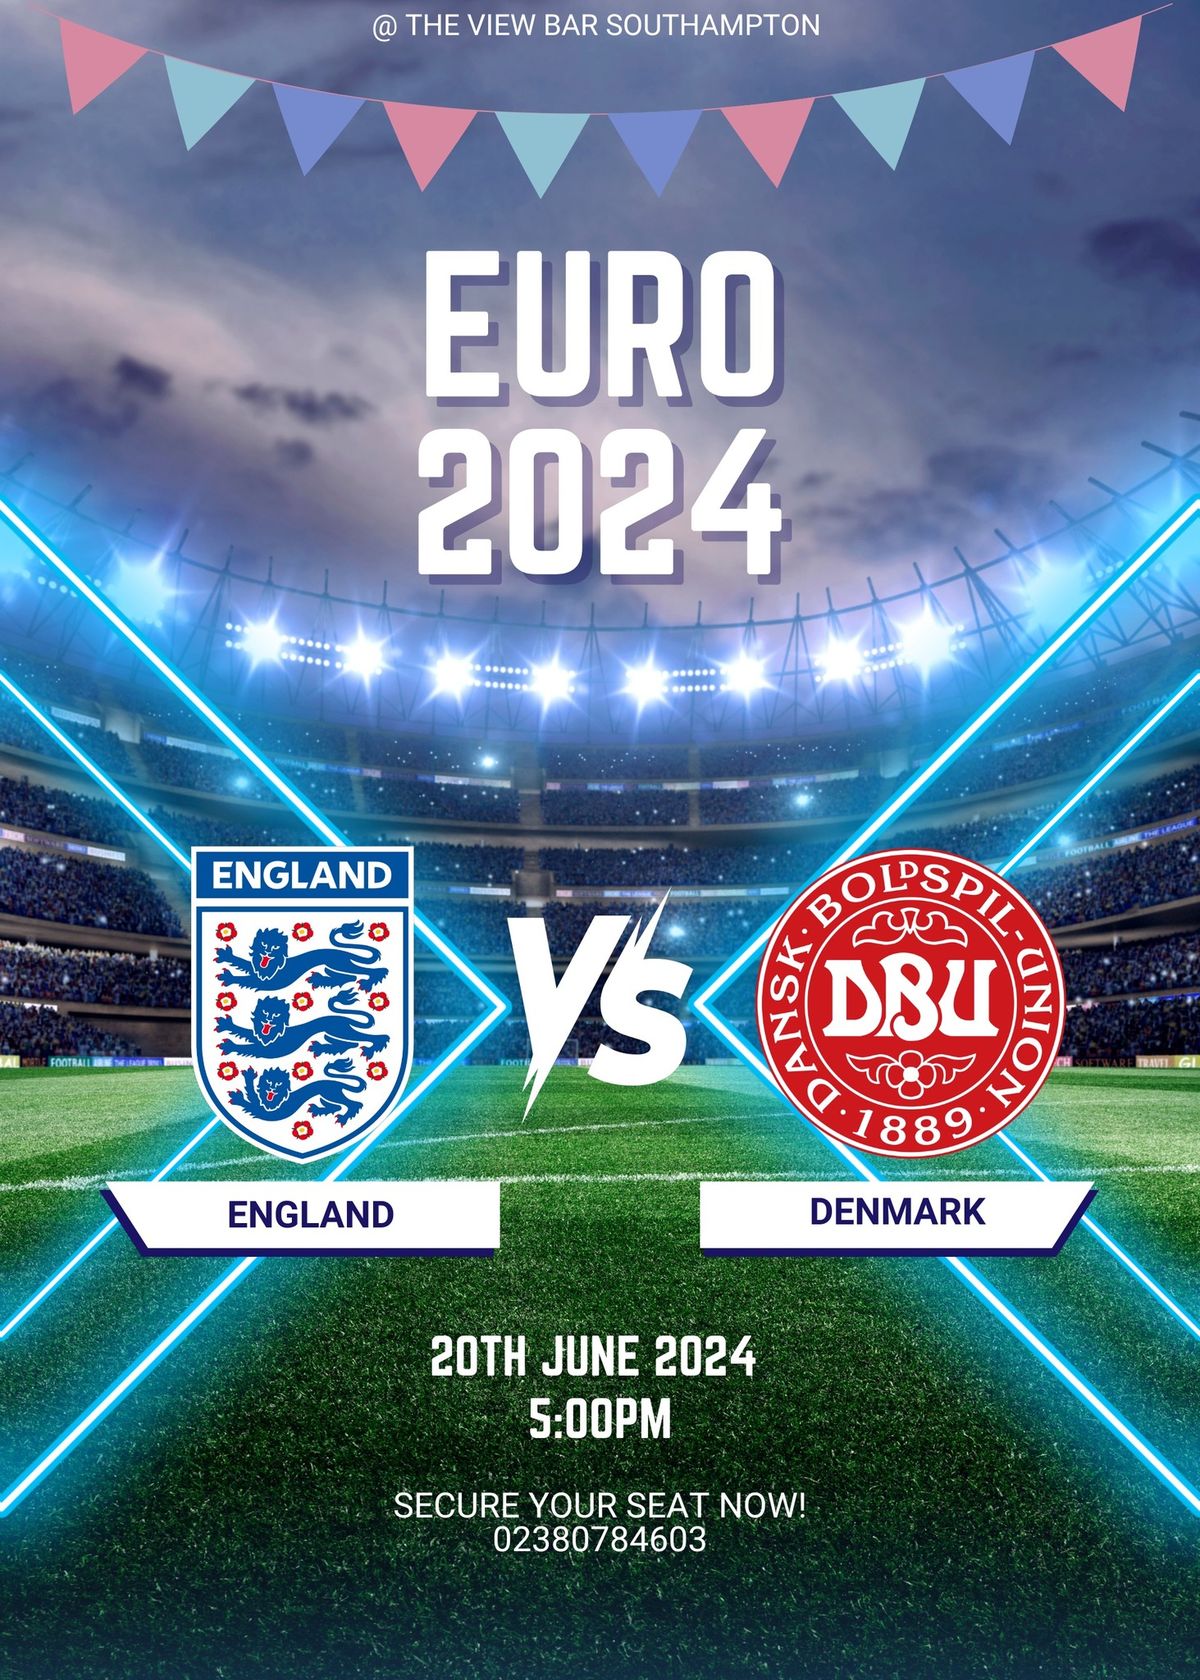 EURO 2024 - ENGLAND VS DENMARK